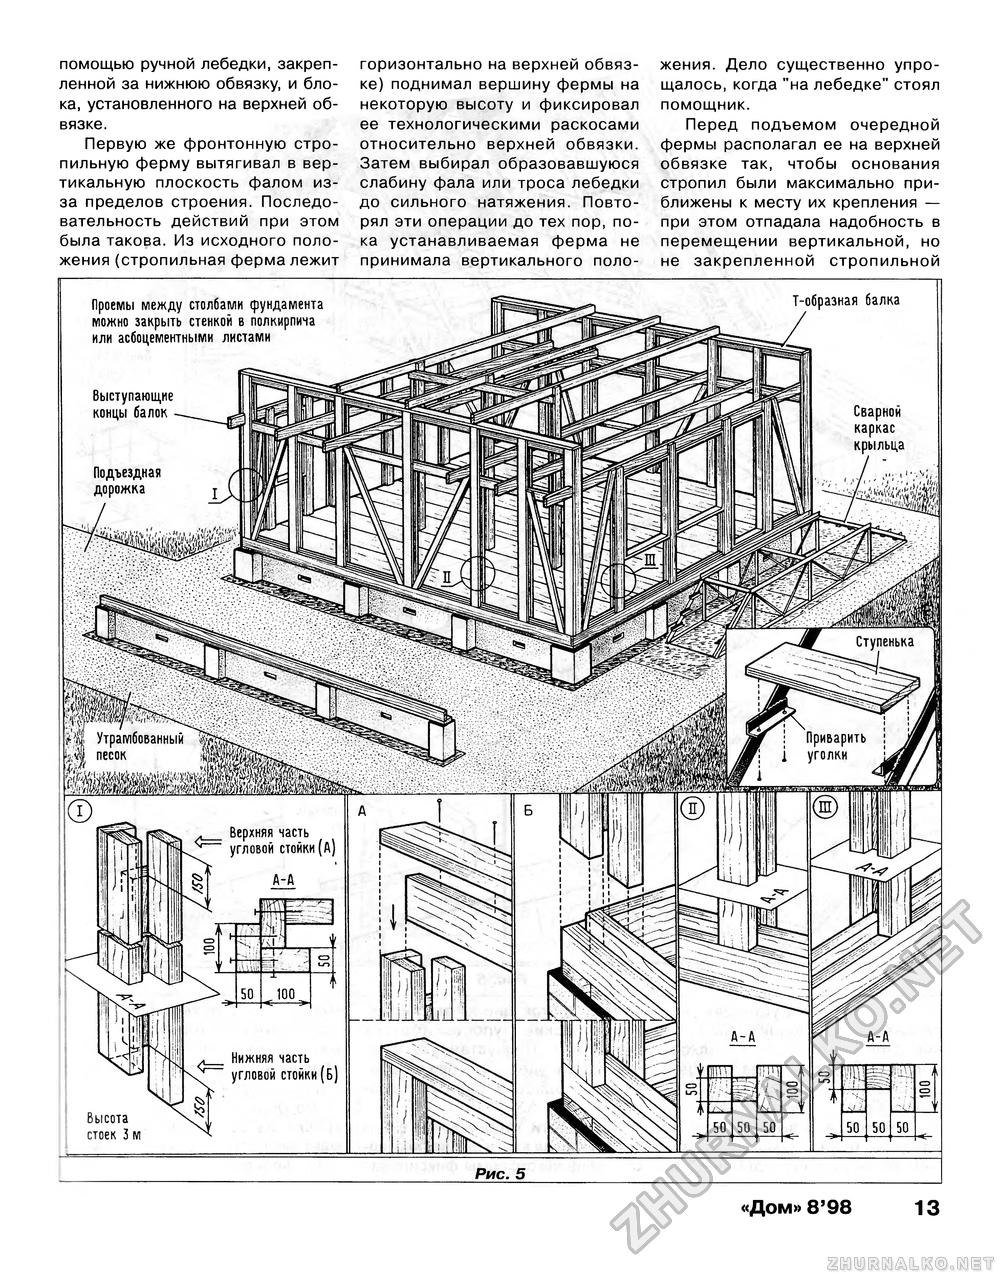 Дом 1998-08, страница 13